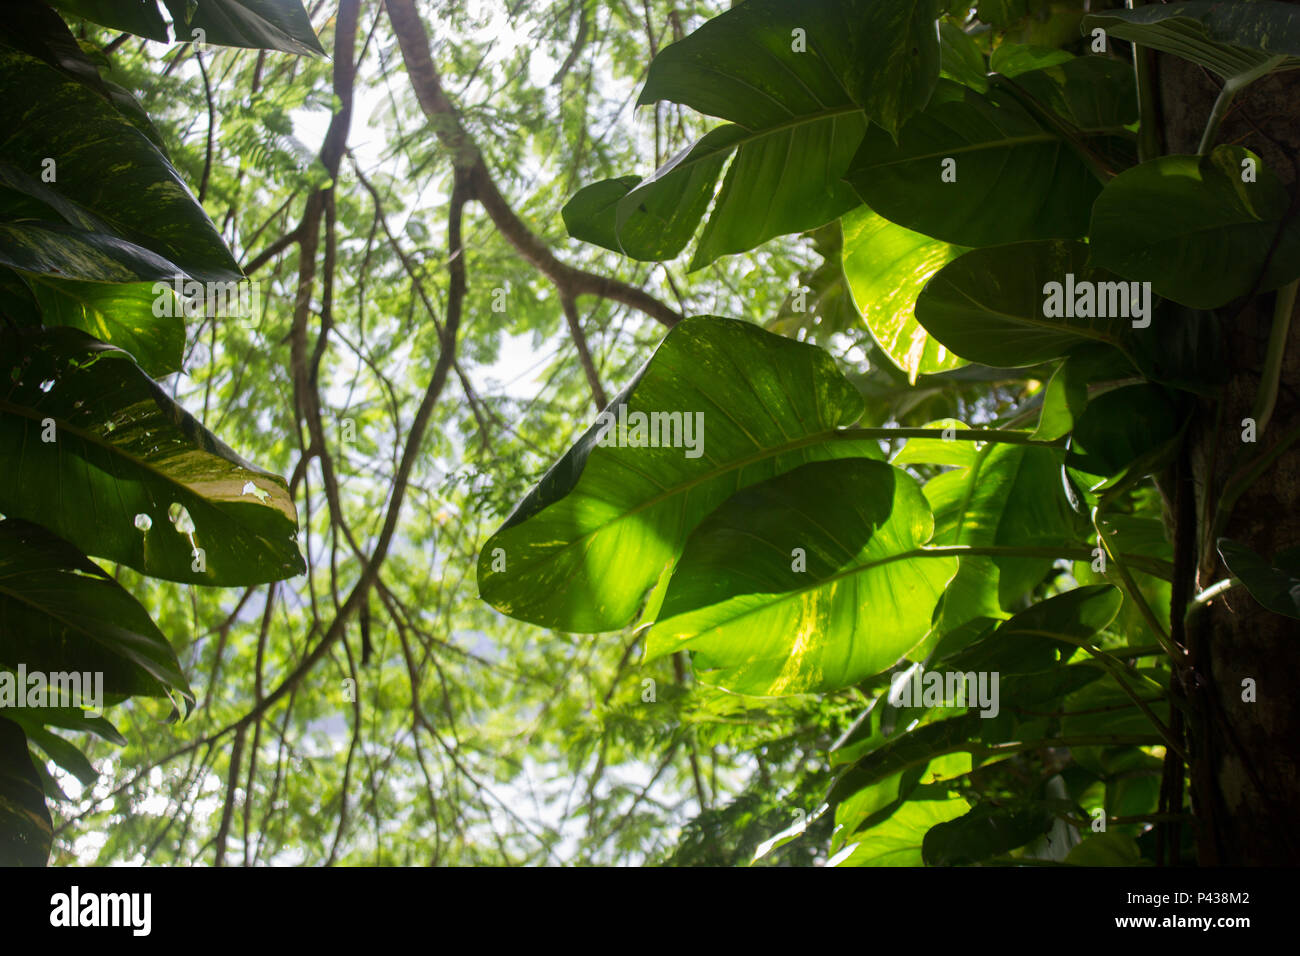 Folha verde de arvore iluminada pelo sol no meio do mato em Ubatuba, SP, Brasil. Stock Photo